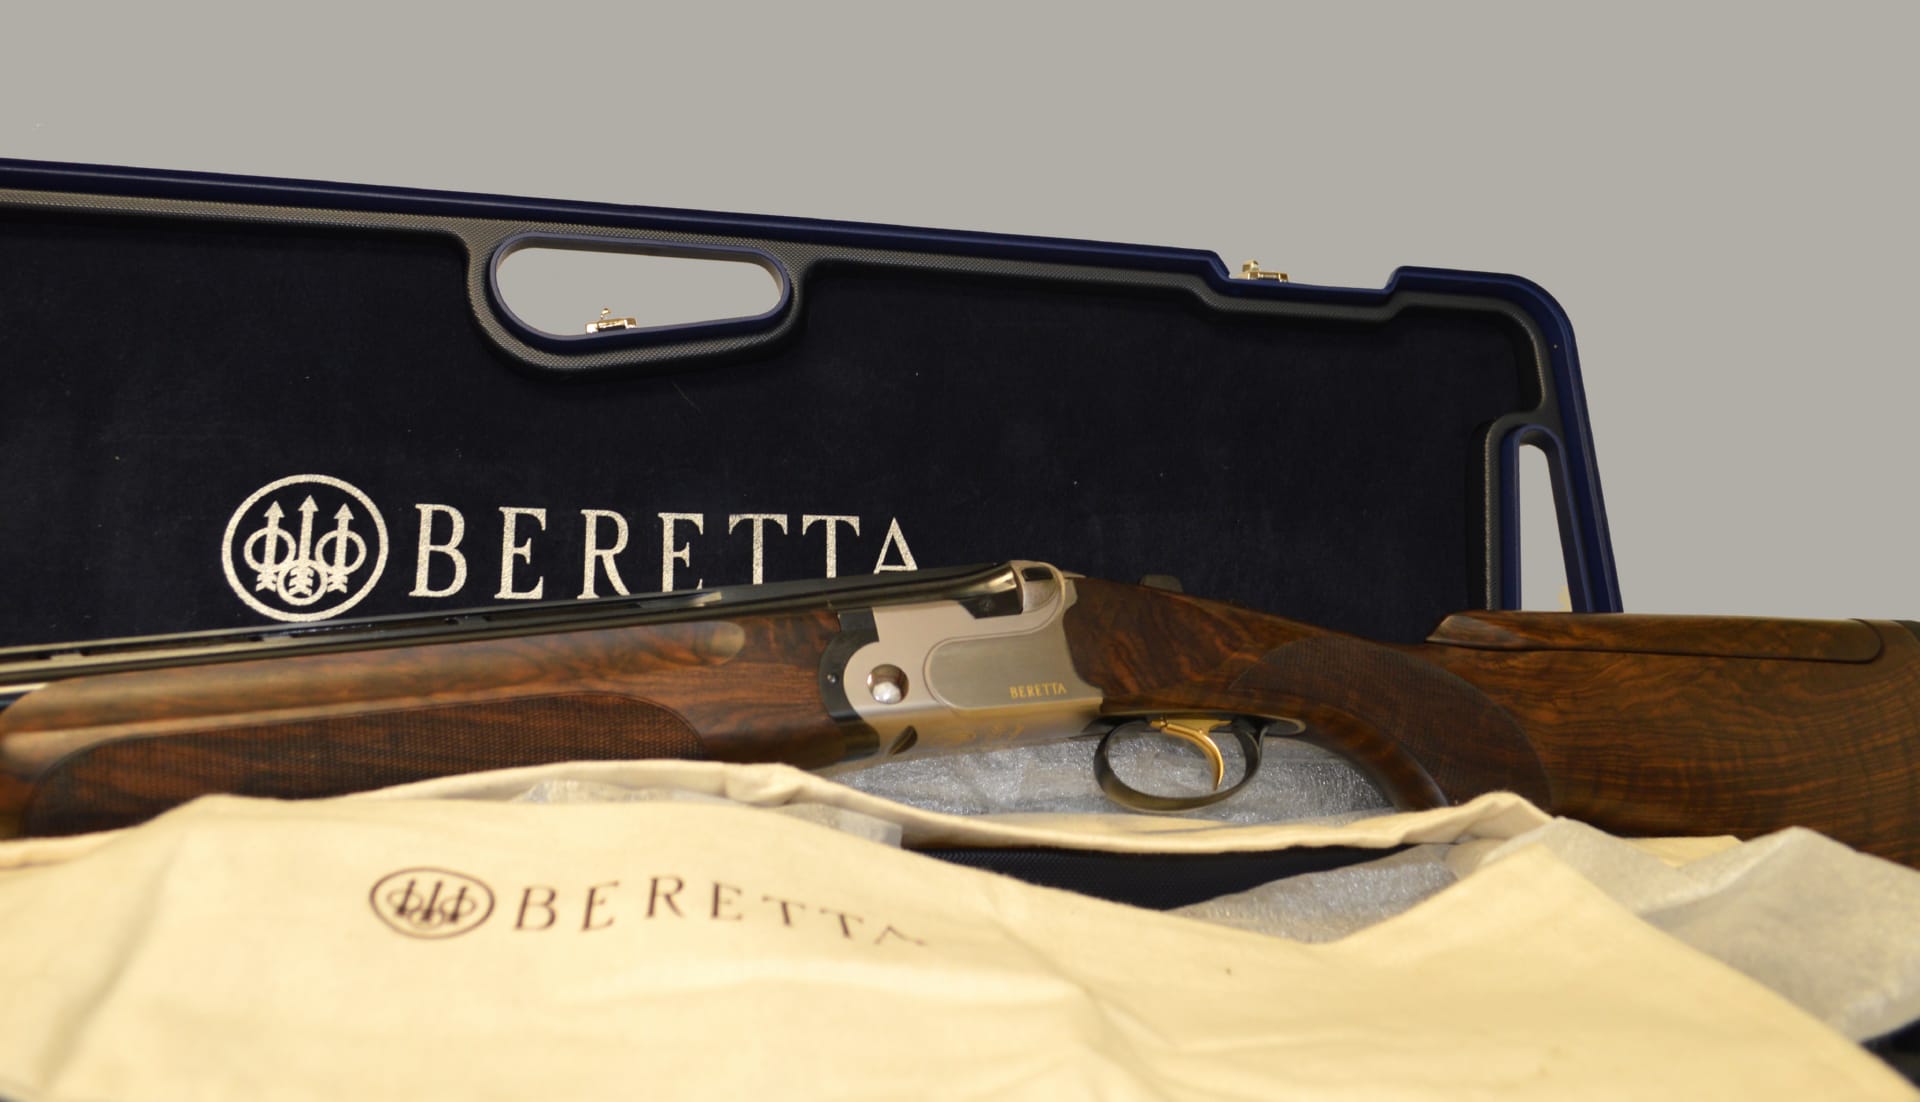 Beretta Shotgun at 2048 x 2048 iPad size wallpapers HD quality